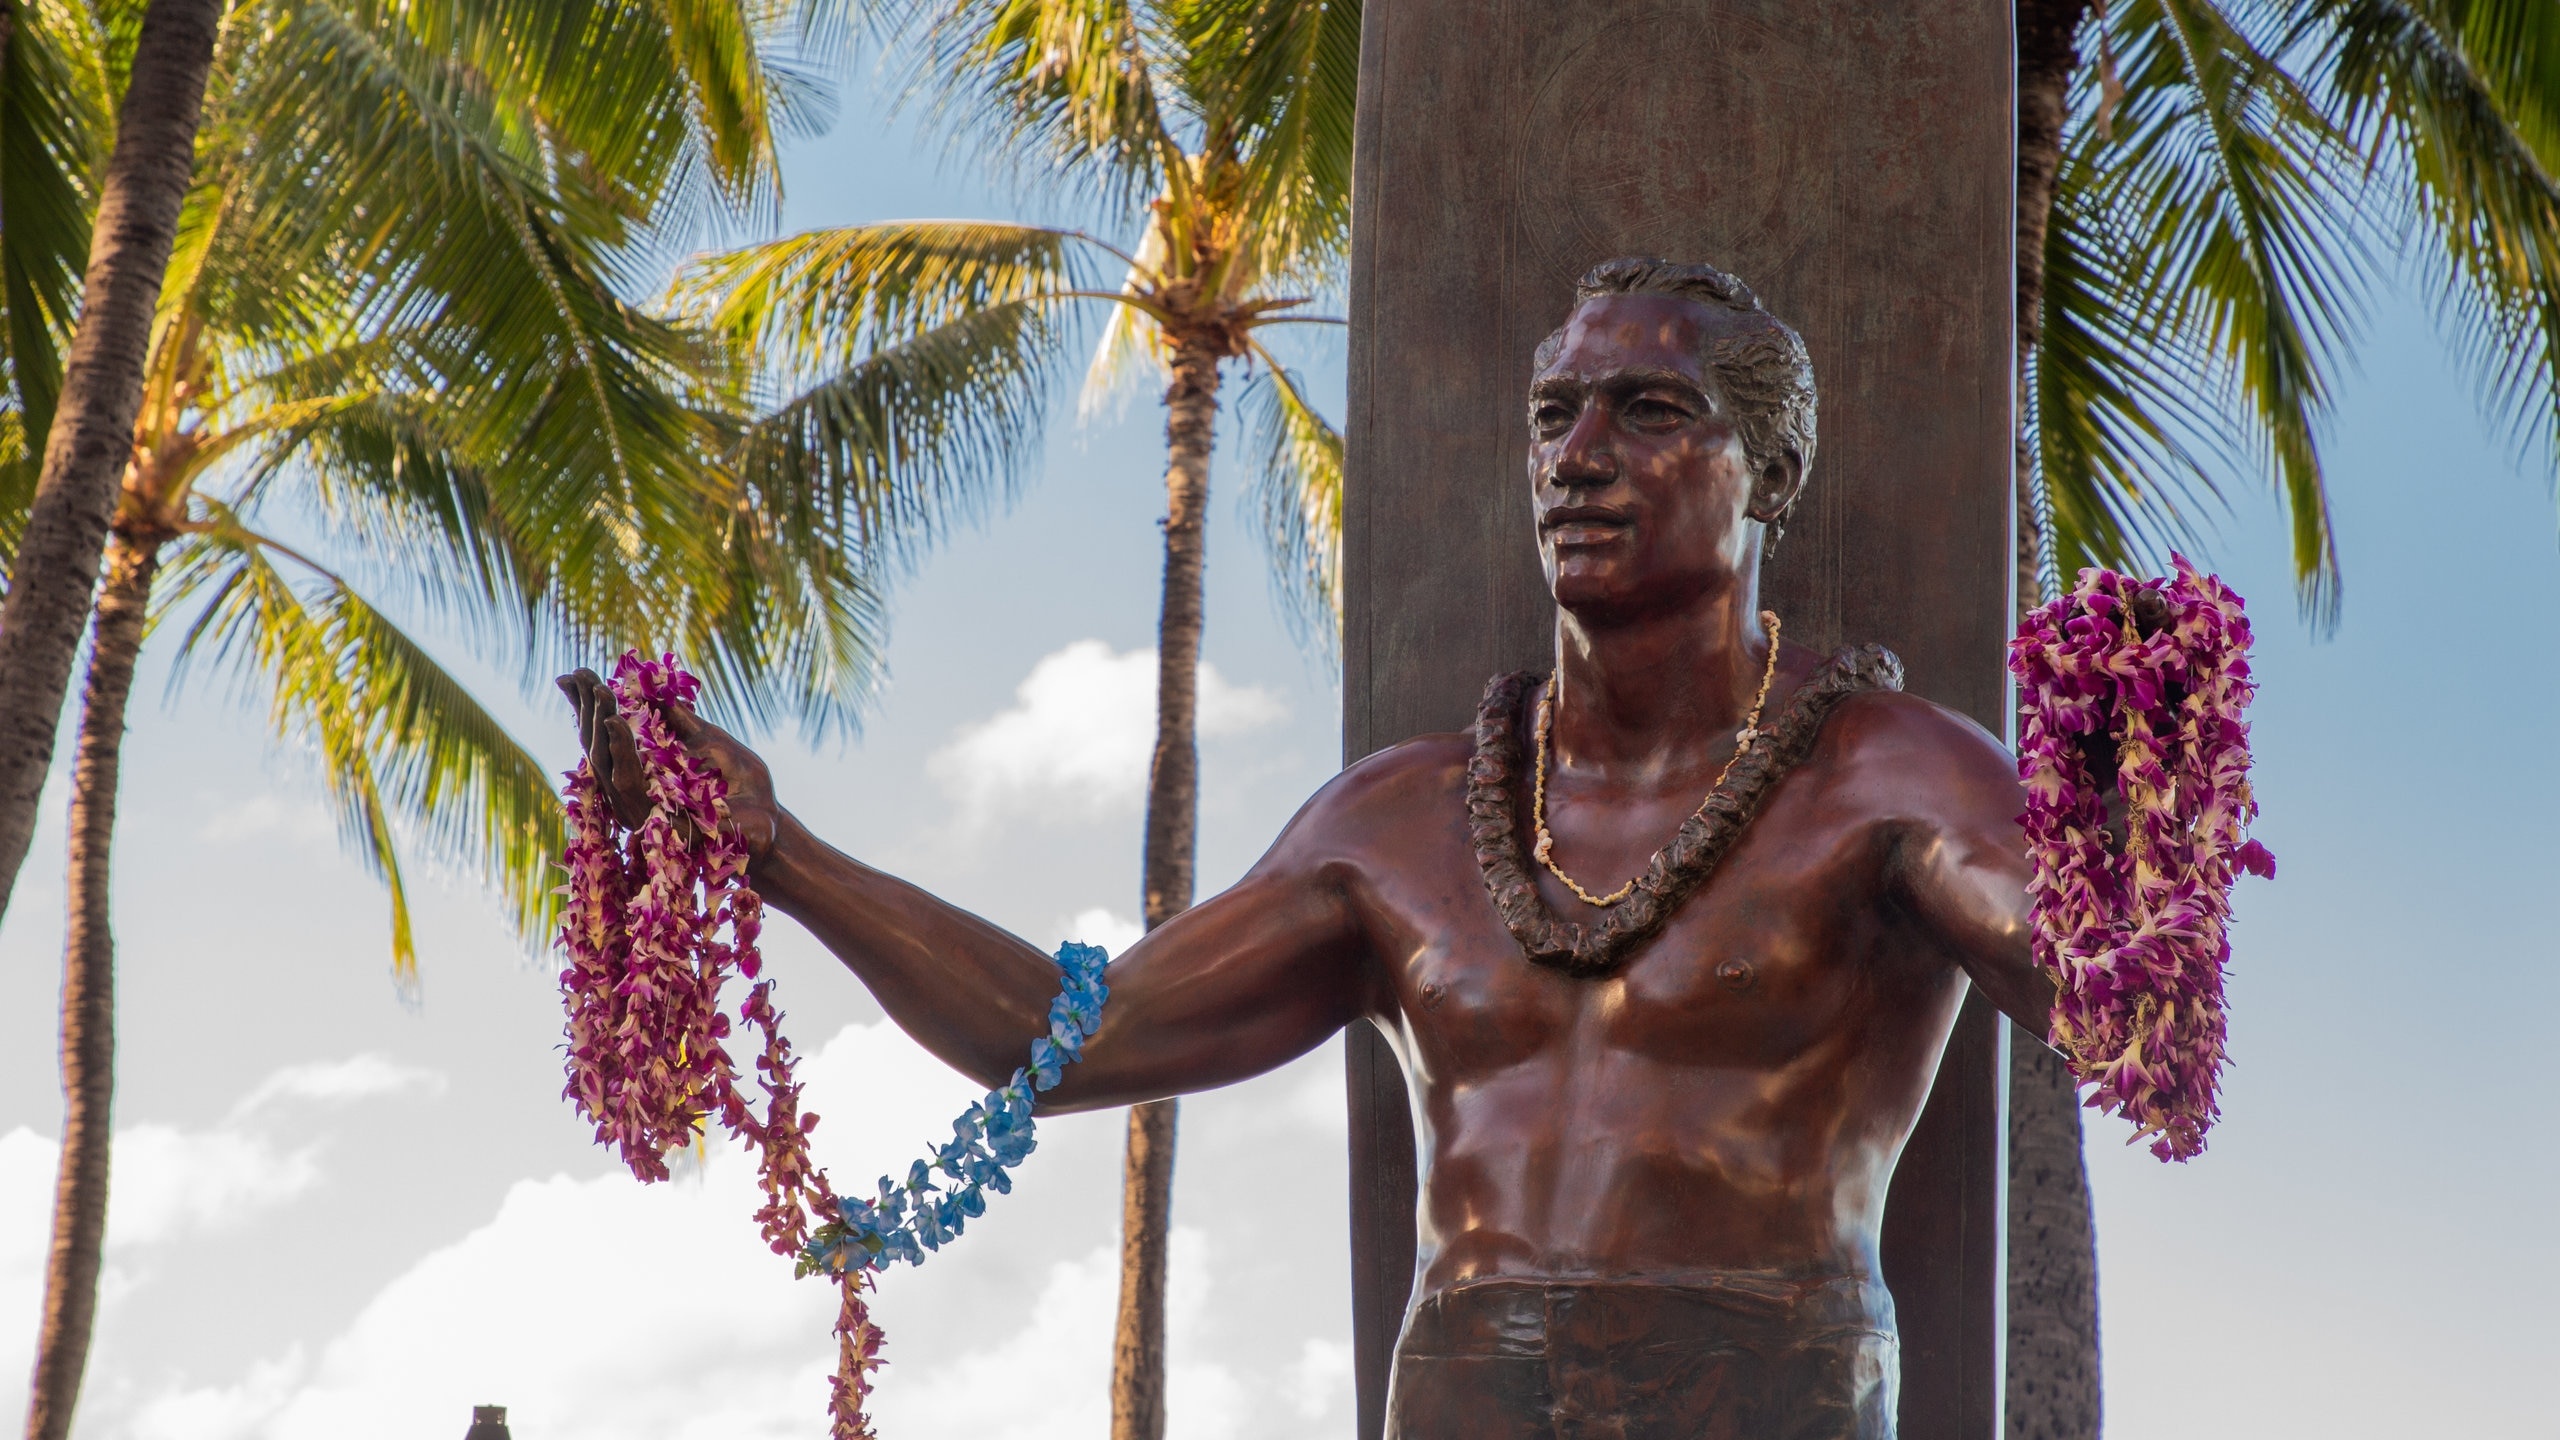 Duke Kahanamoku, Statue in Honolulu, Vacation rental guide, Beachside bliss, 2560x1440 HD Desktop